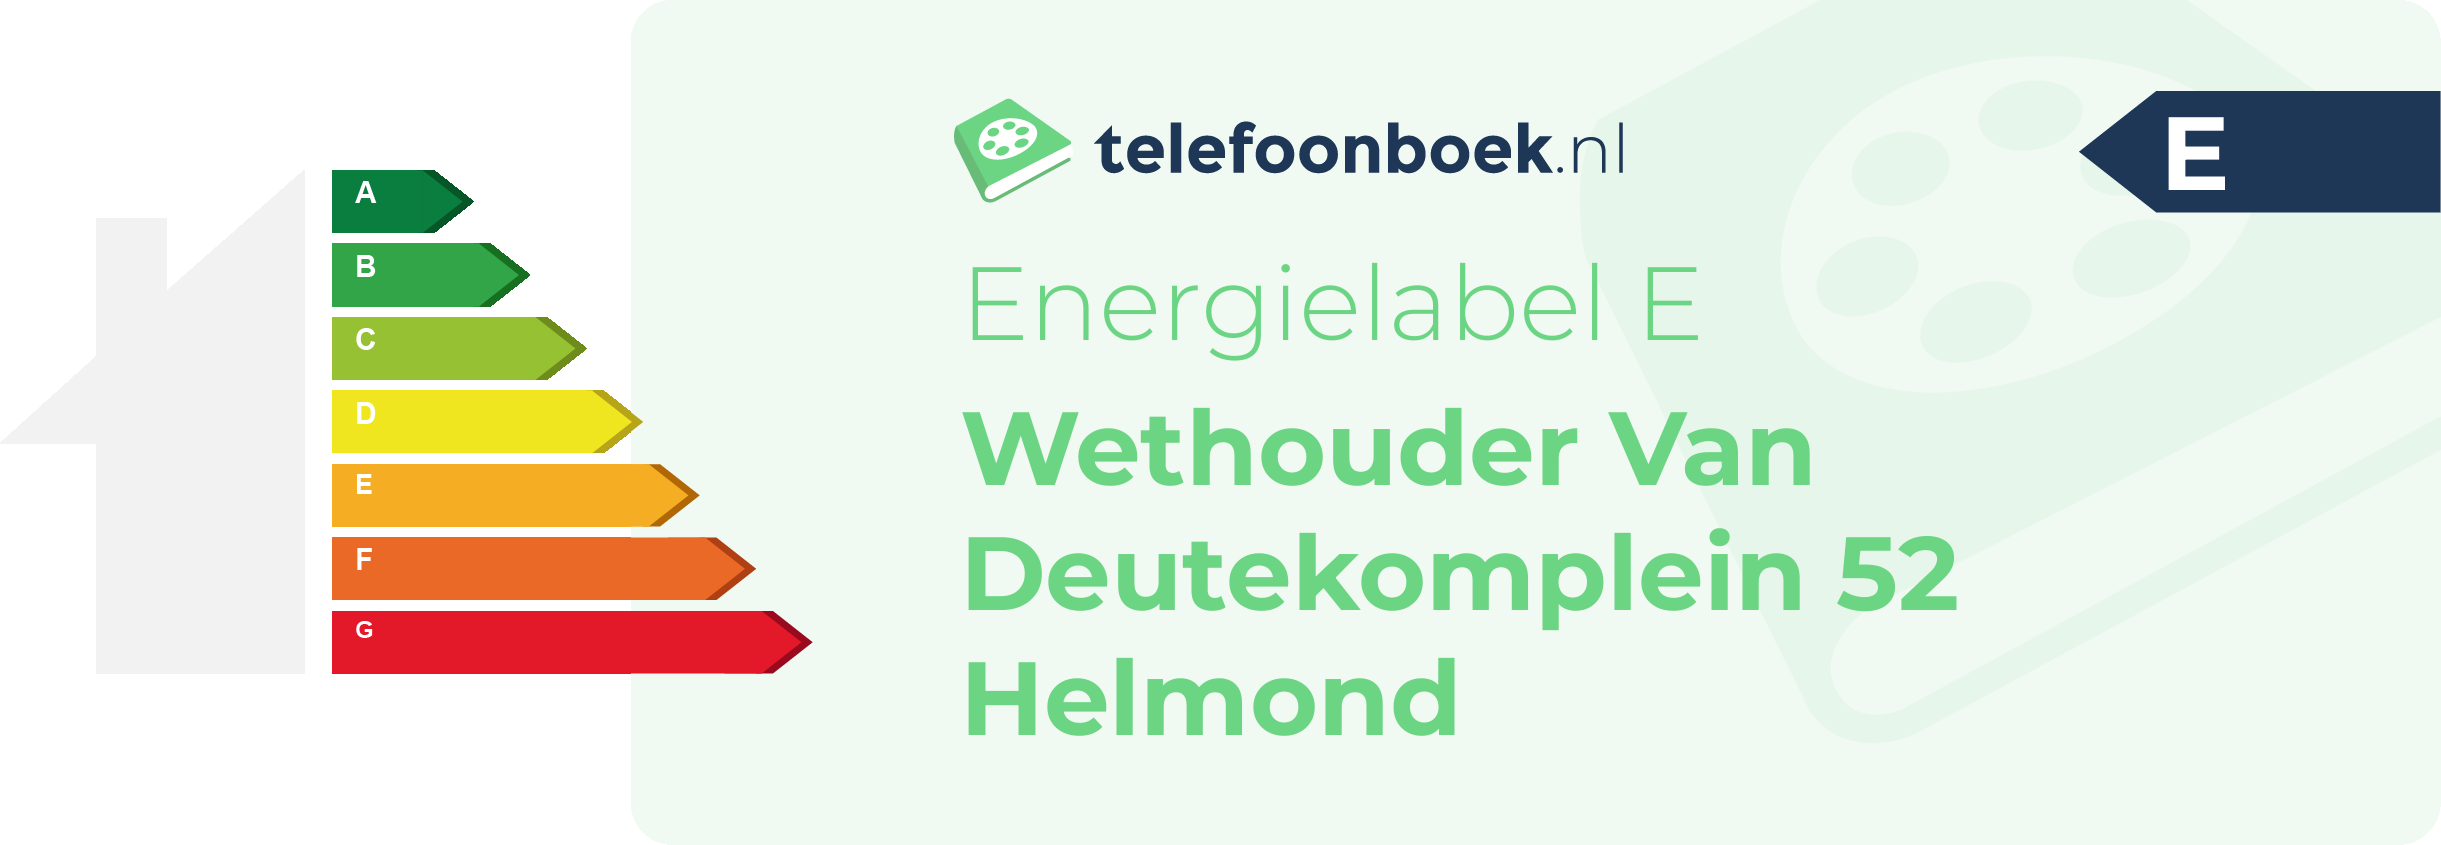 Energielabel Wethouder Van Deutekomplein 52 Helmond